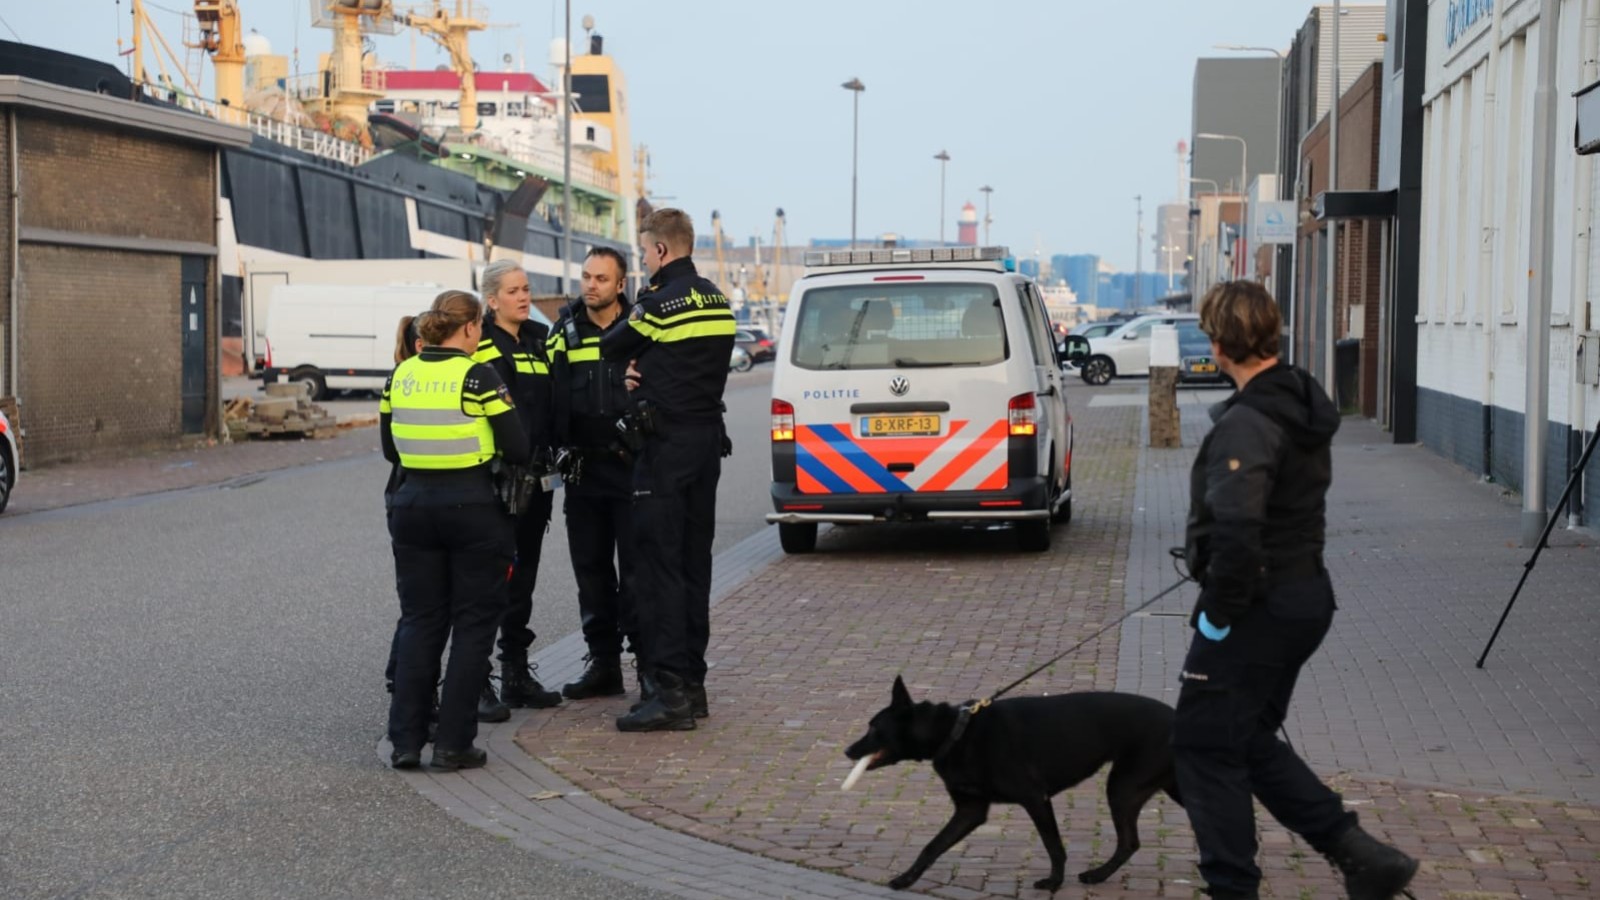 Overval op pand in havengebied IJmuiden